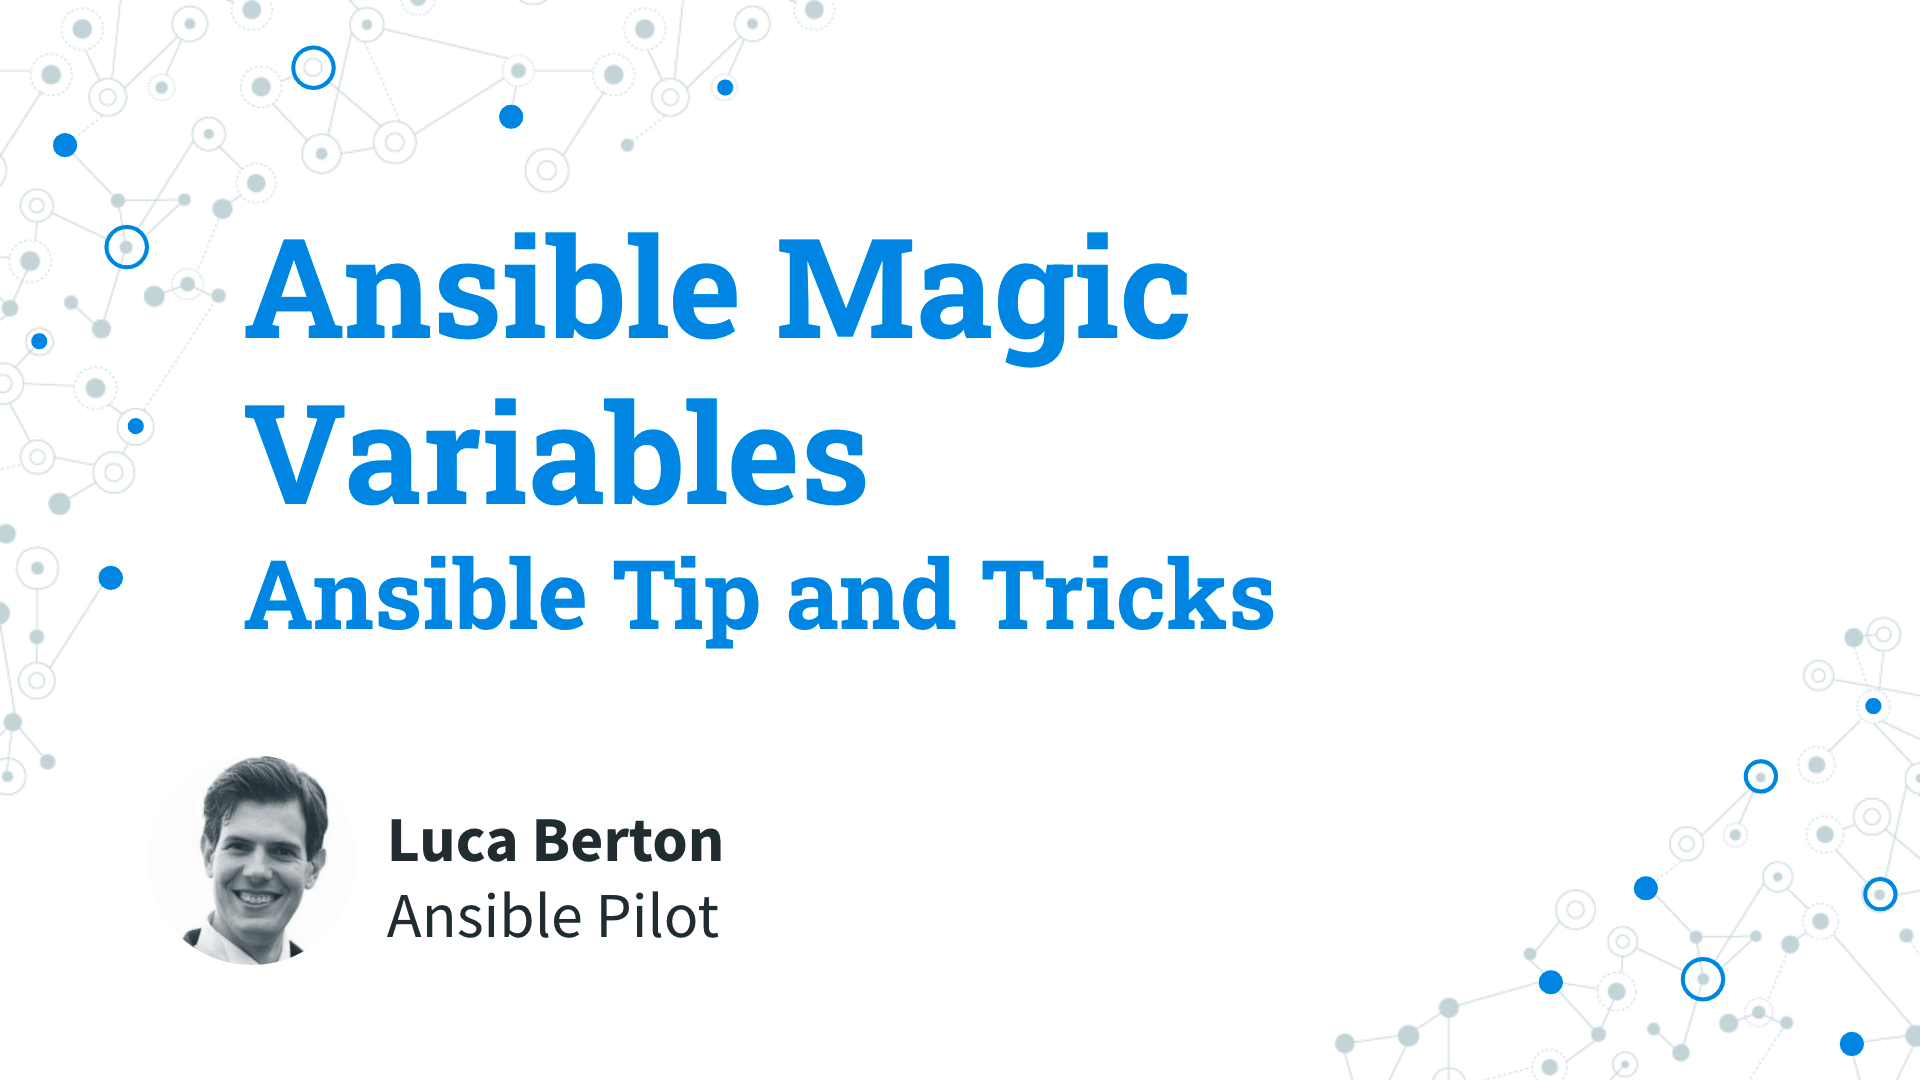 Ansible Magic Variables - Ansible Tip and Tricks